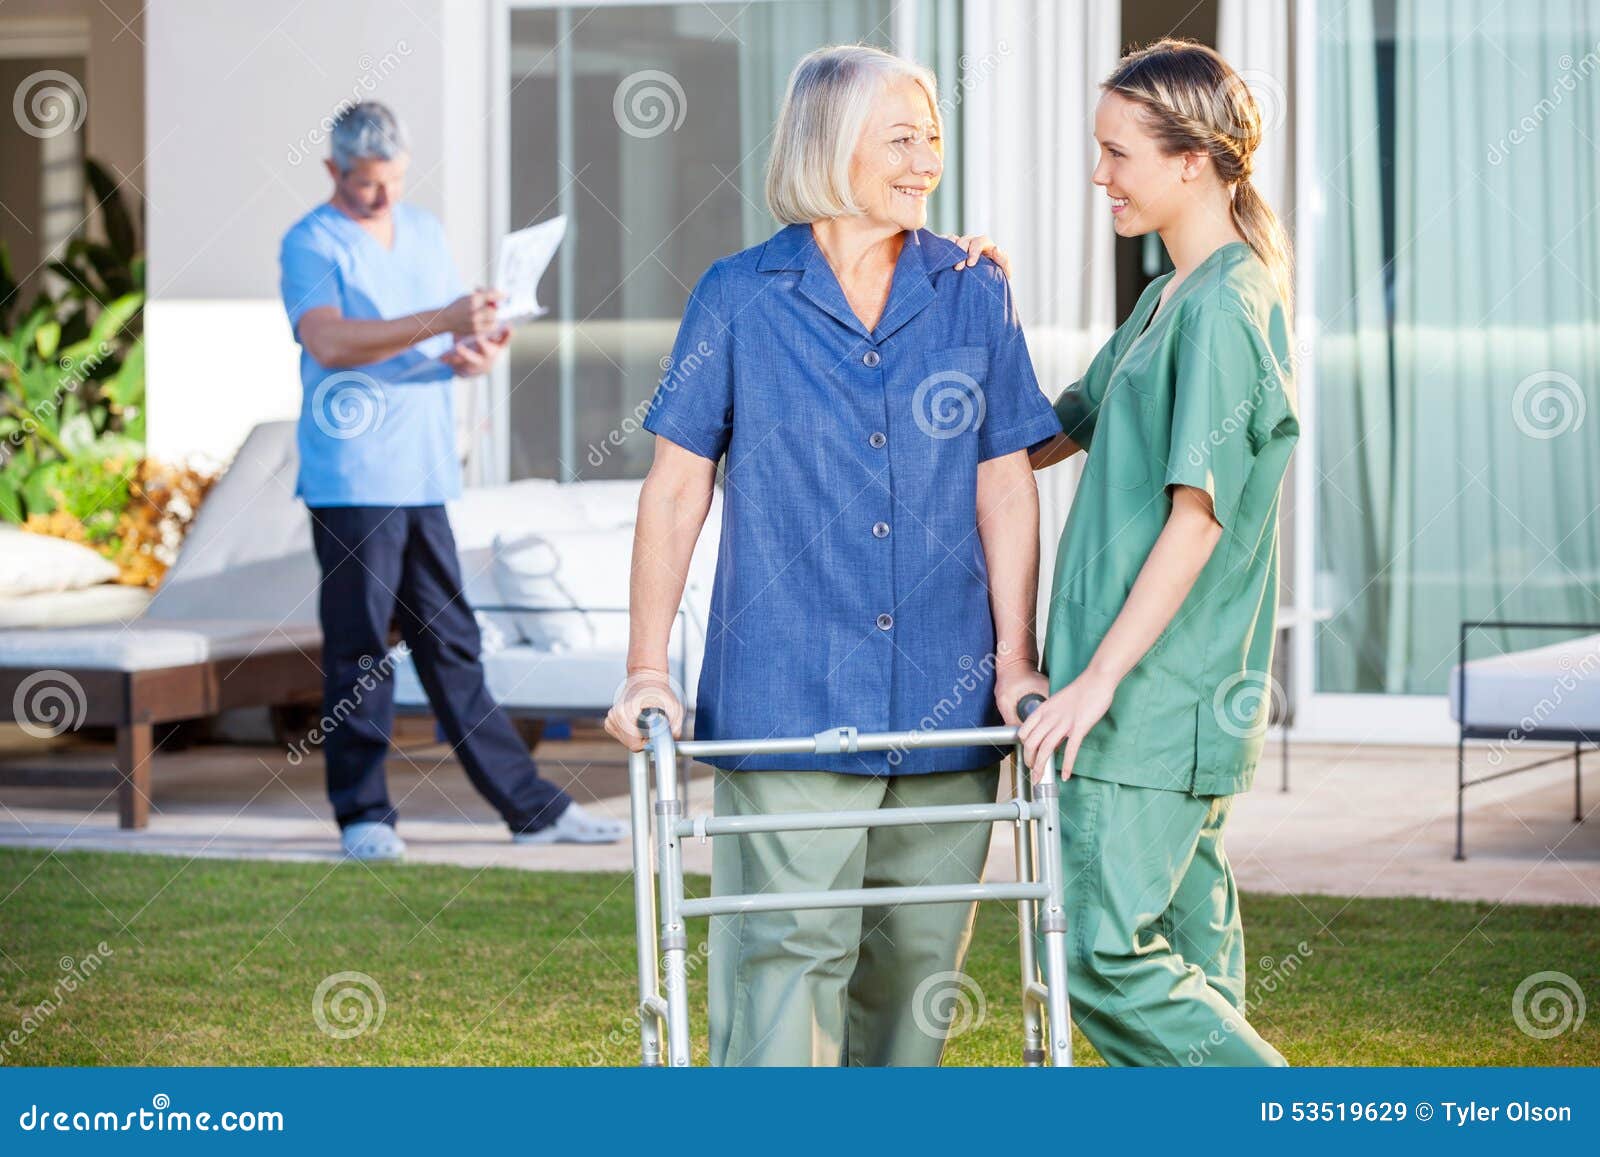 站立在楼梯的医生和护士 库存图片. 图片 包括有 成人, 确信, 护士, 穿戴, 实验室, 女性, 矿穴 - 84086591